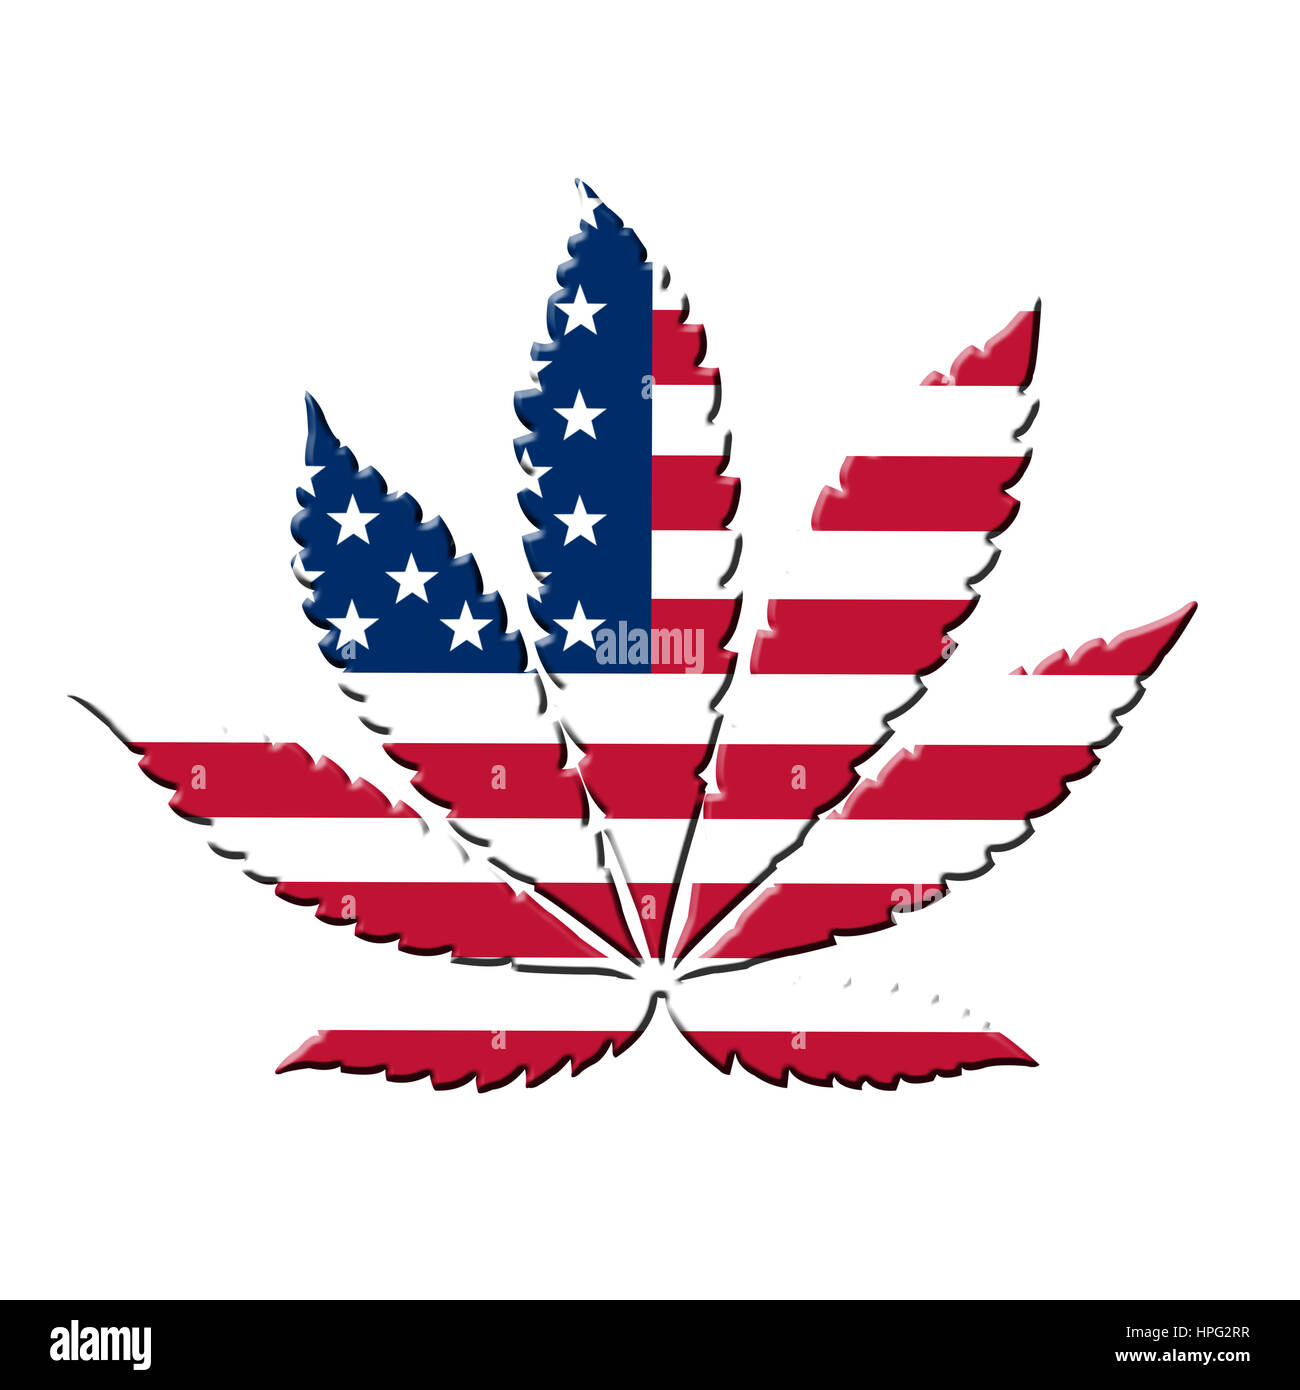 United States flag avec feuilles de marijuana au lieu d'étoiles Banque D'Images